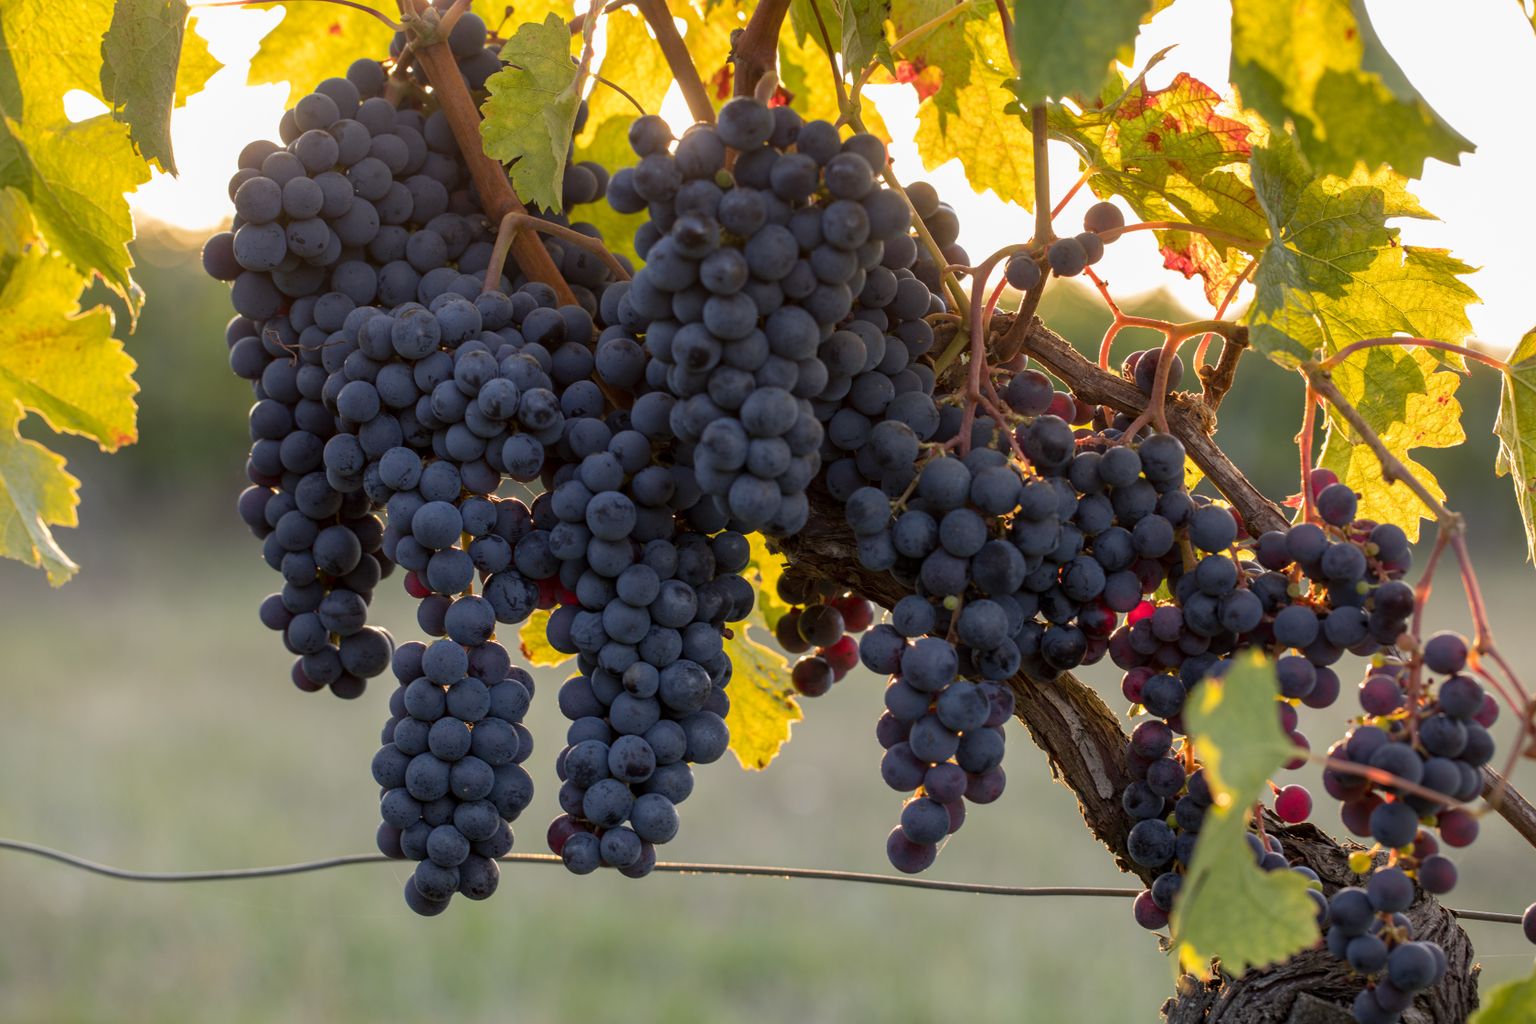 Kasulikku ainet leidub viinamarjade kestades ja seemnetes.